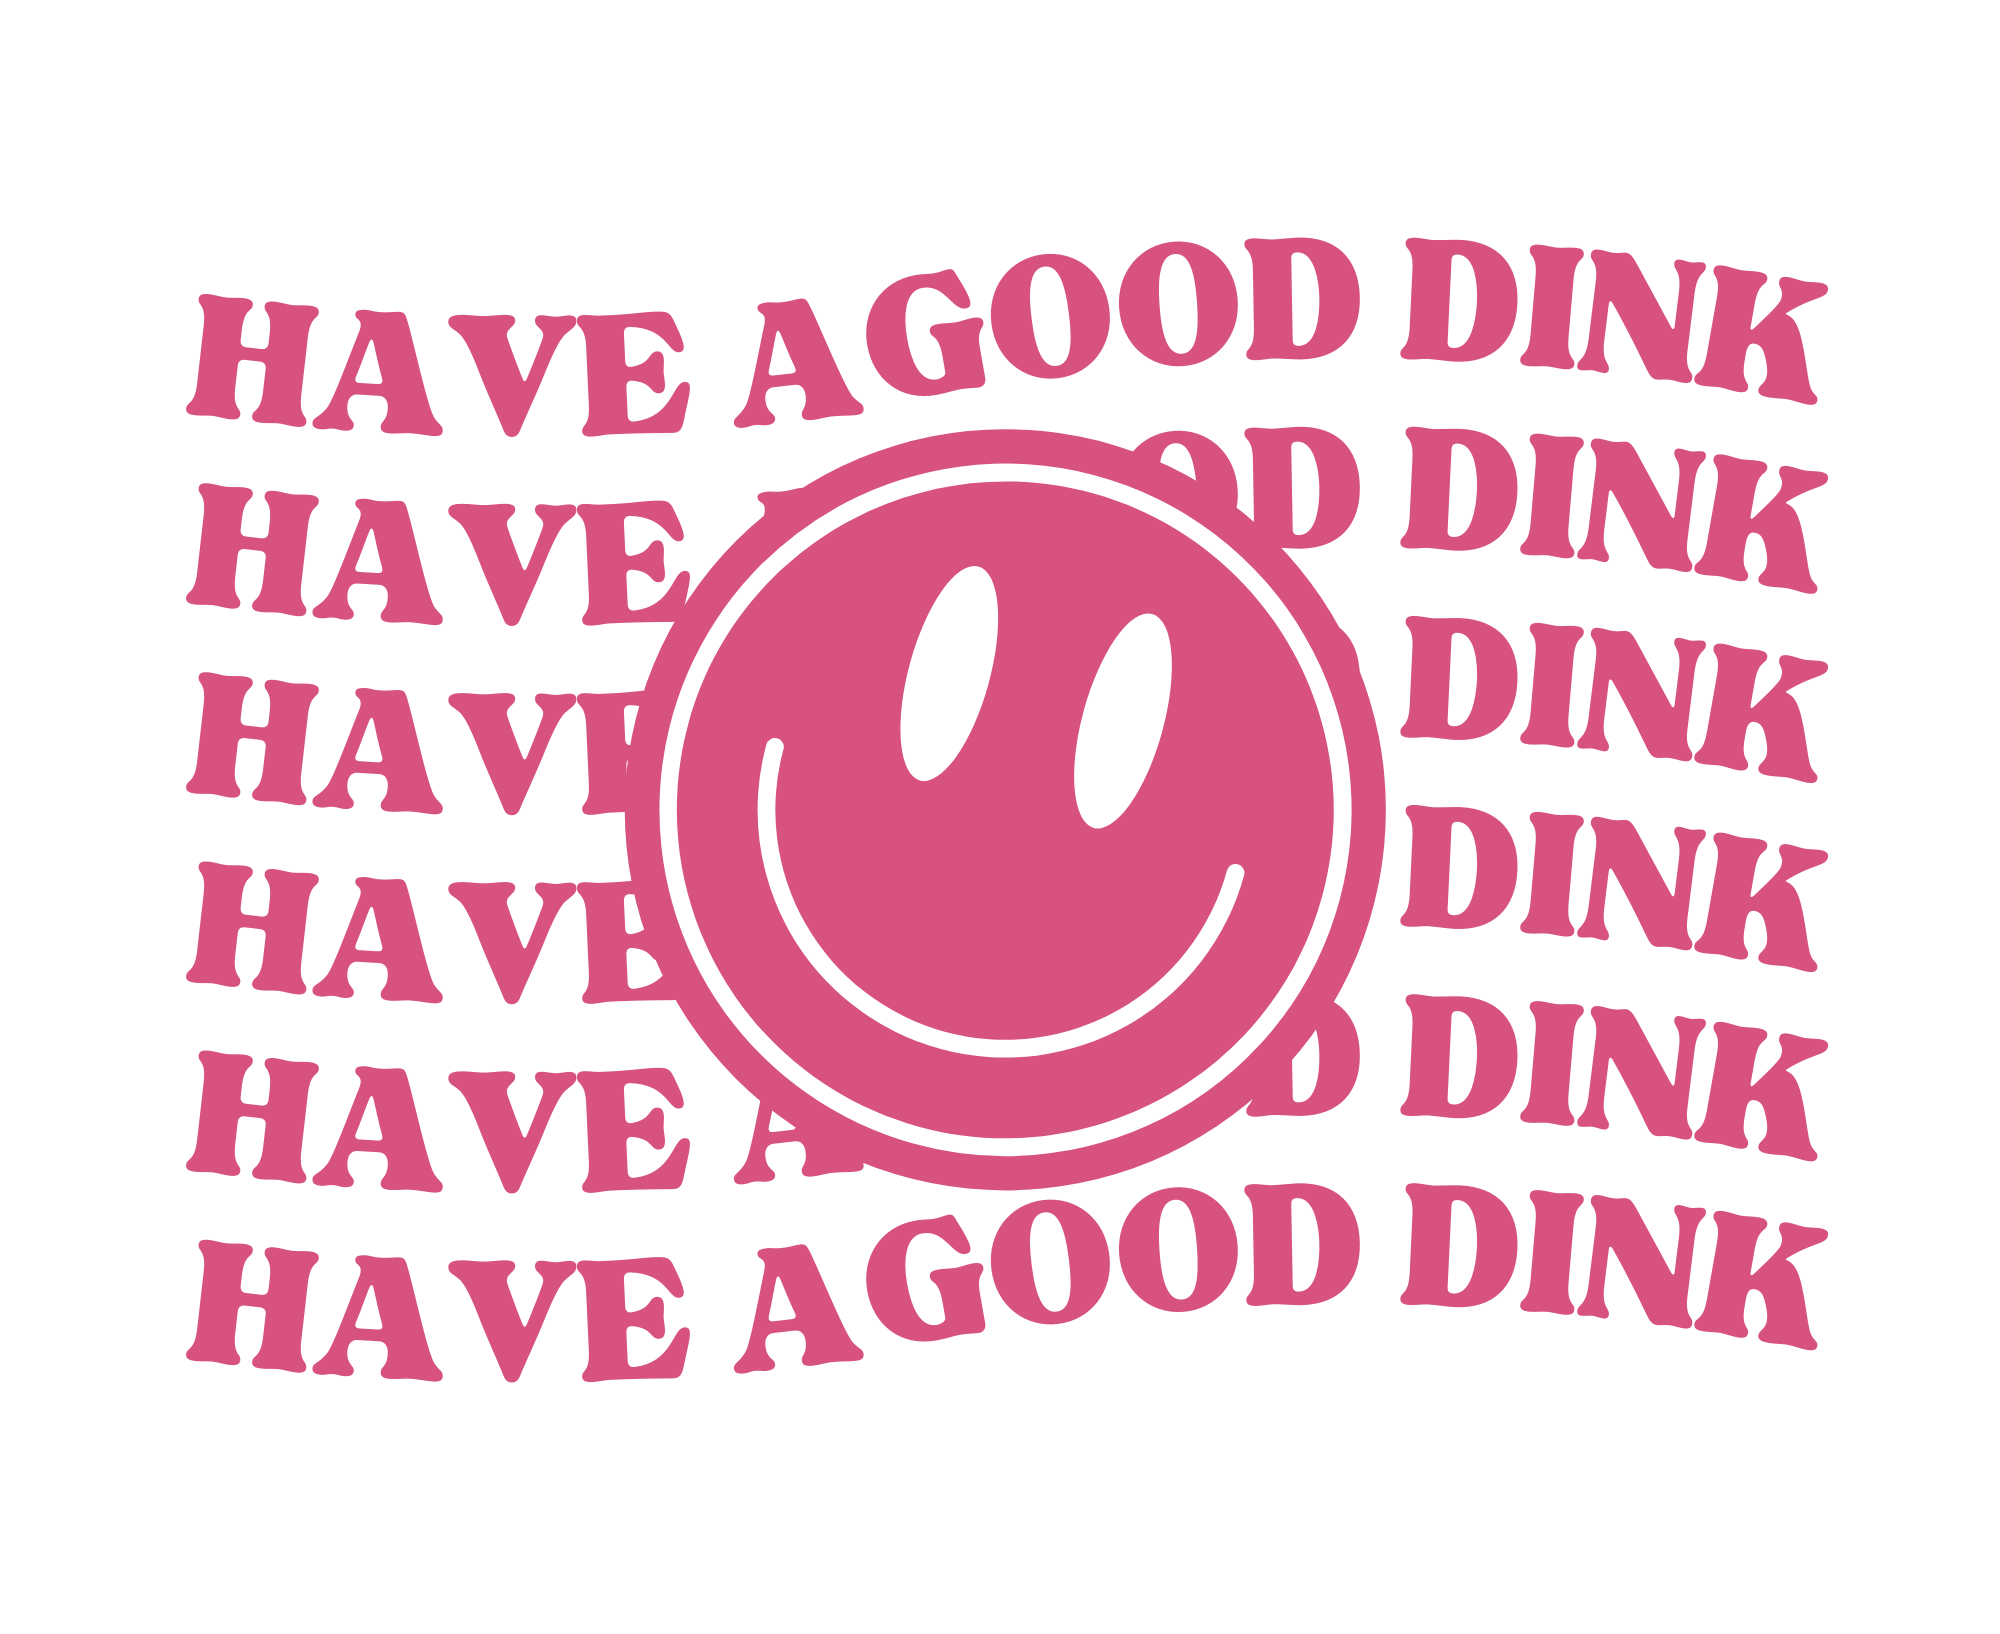 Have a Good Dink!